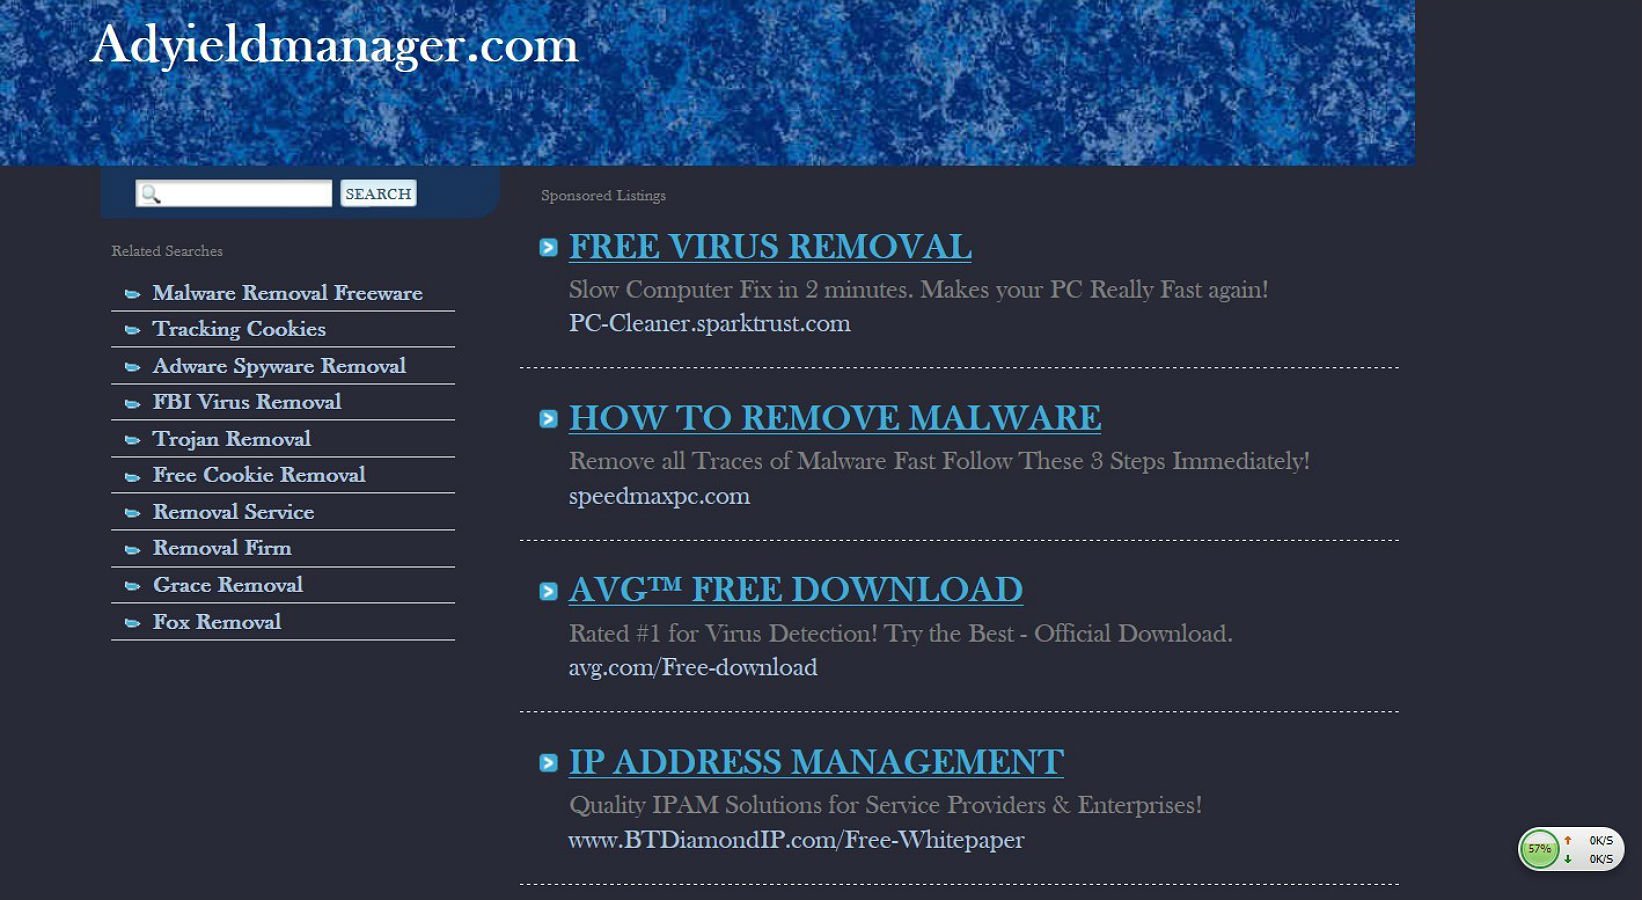 Computer Virus Danger Hacking Hacker Internet Sadic - Stasys Pužauskas - HD Wallpaper 